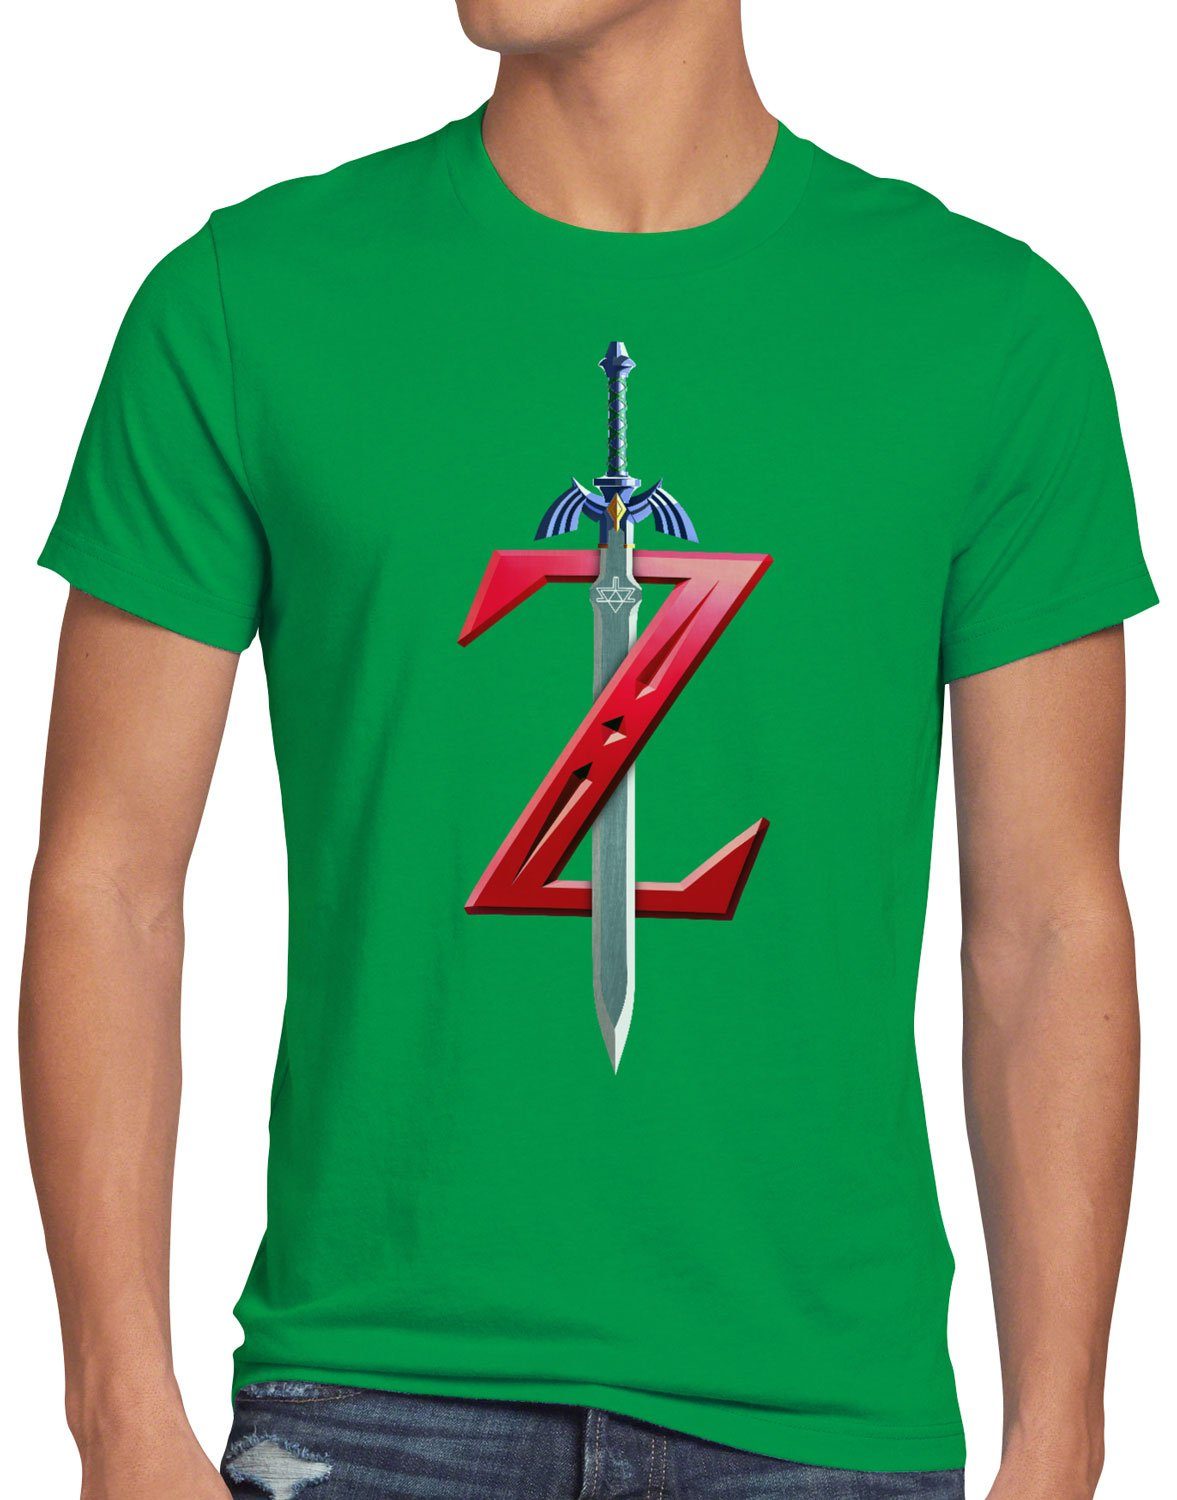 style3 T-Shirt Herren grün Schwert Print-Shirt Hyrule zeld link ocarina